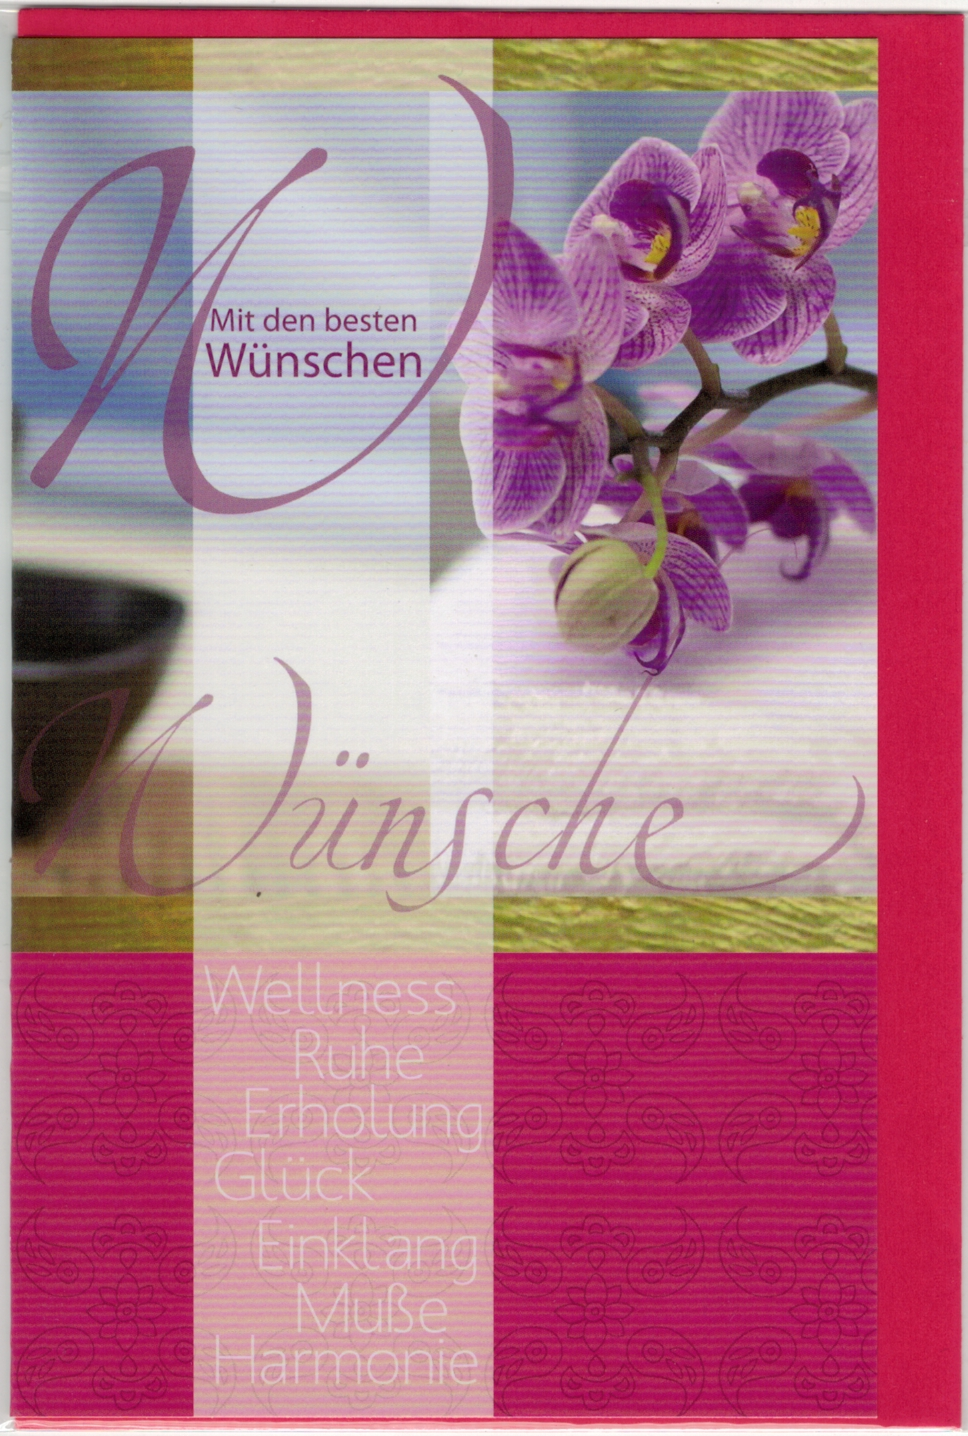 Glückwunschkarte mit Umschlag, "Wünsche" mit lila Orchidee